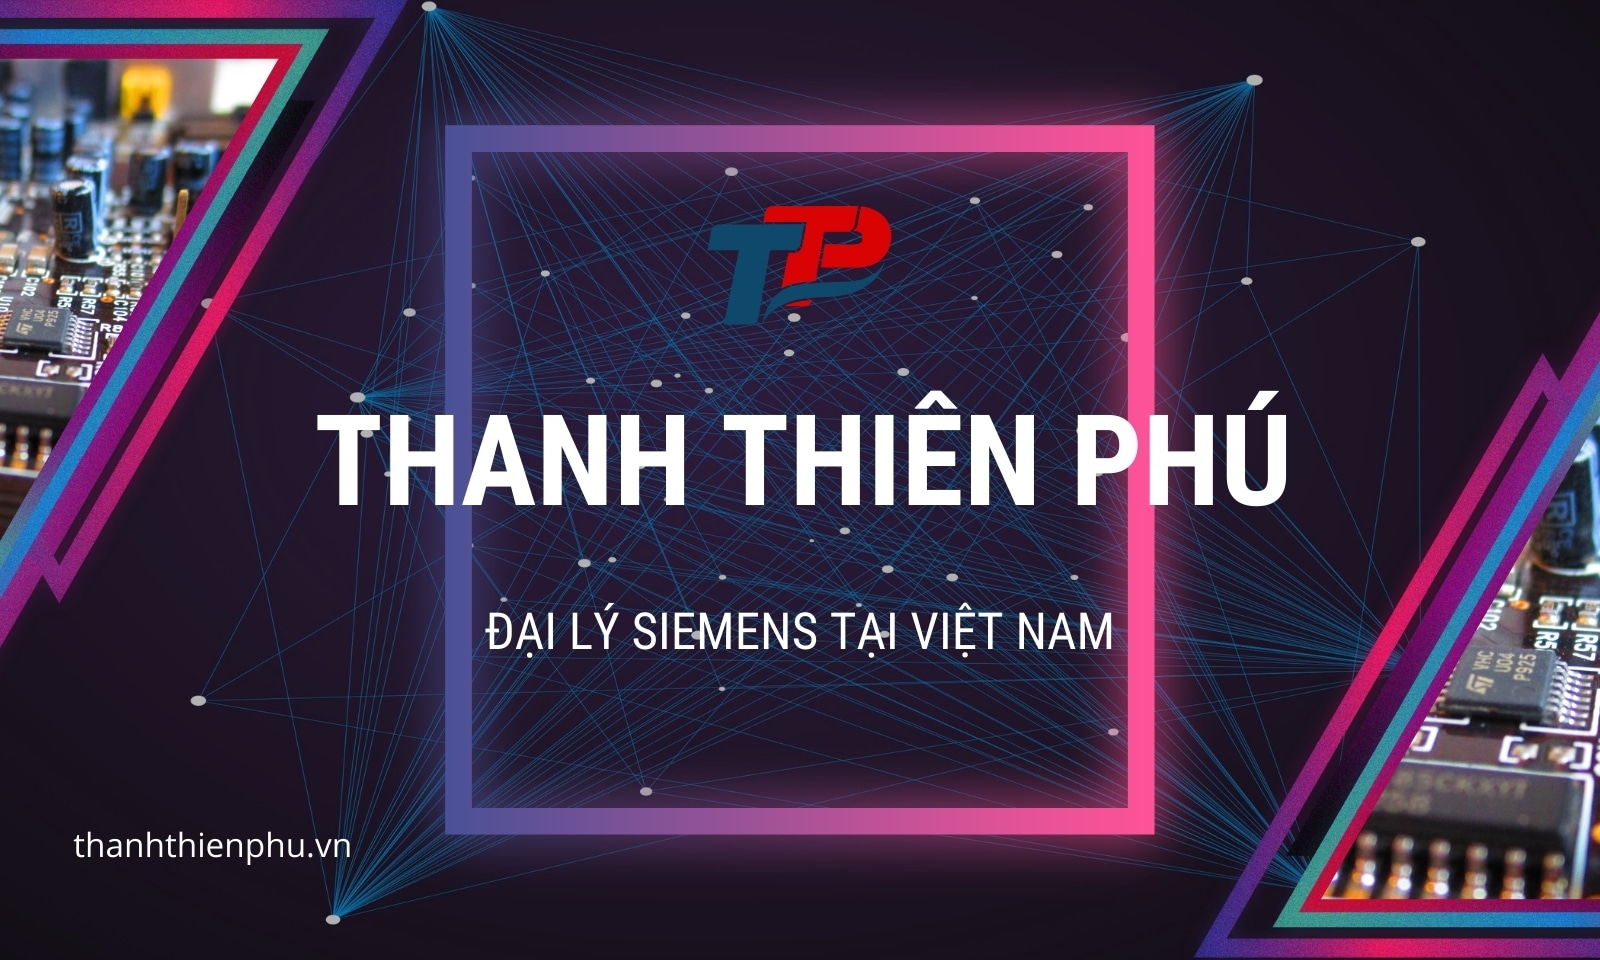 Thanh Thiên Phú là đại lý Siemens tại Việt Nam